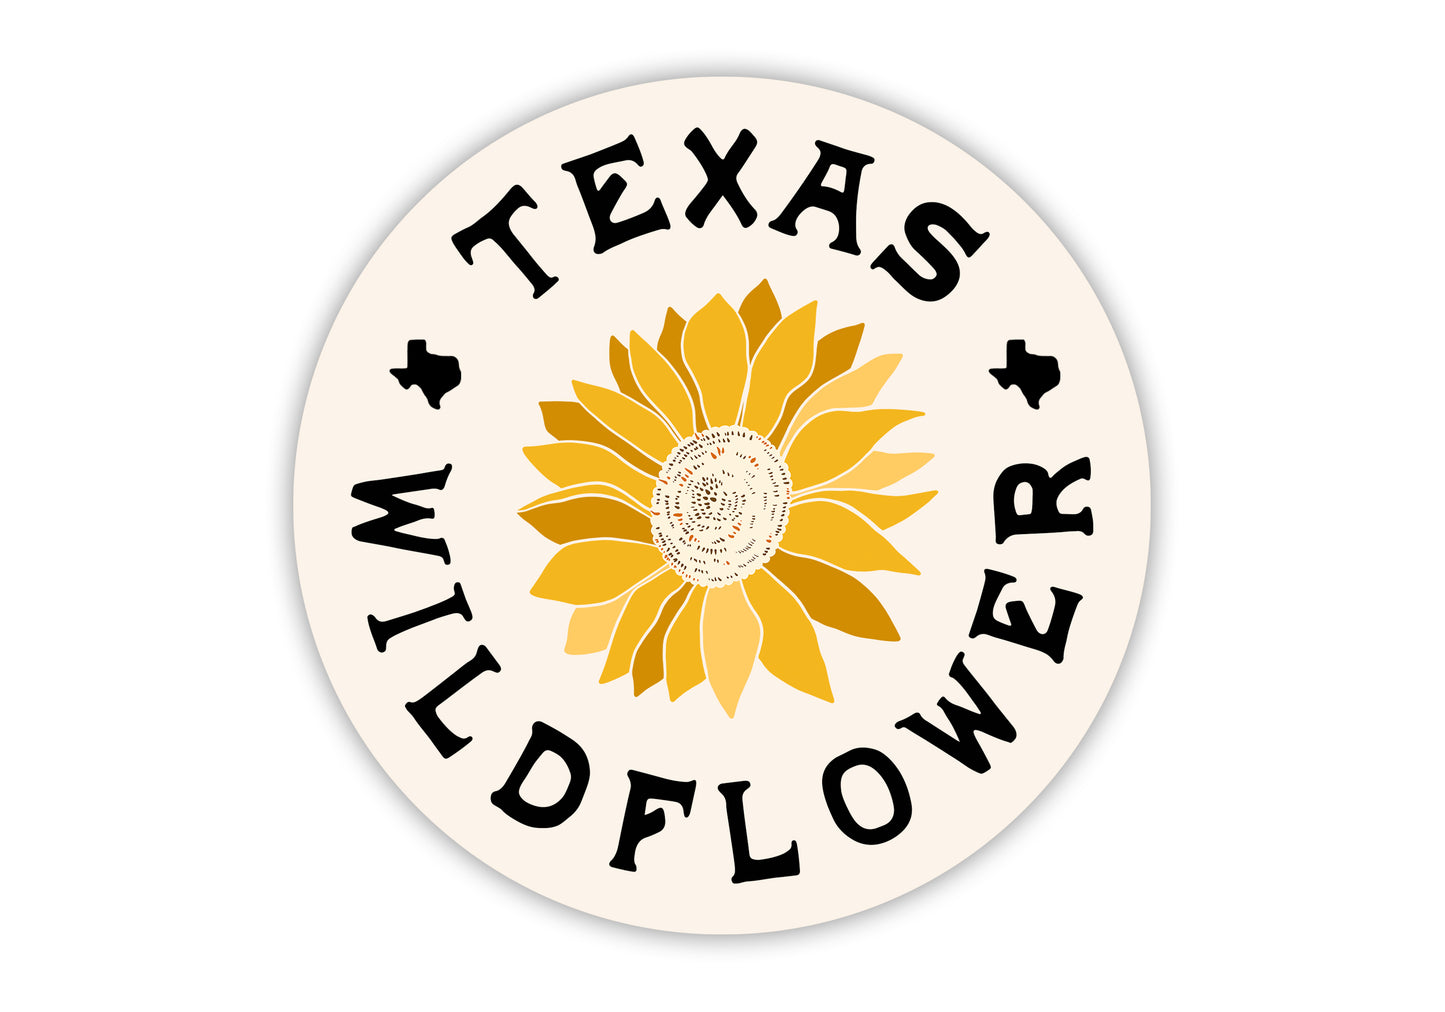 Texas Wildflower Sticker